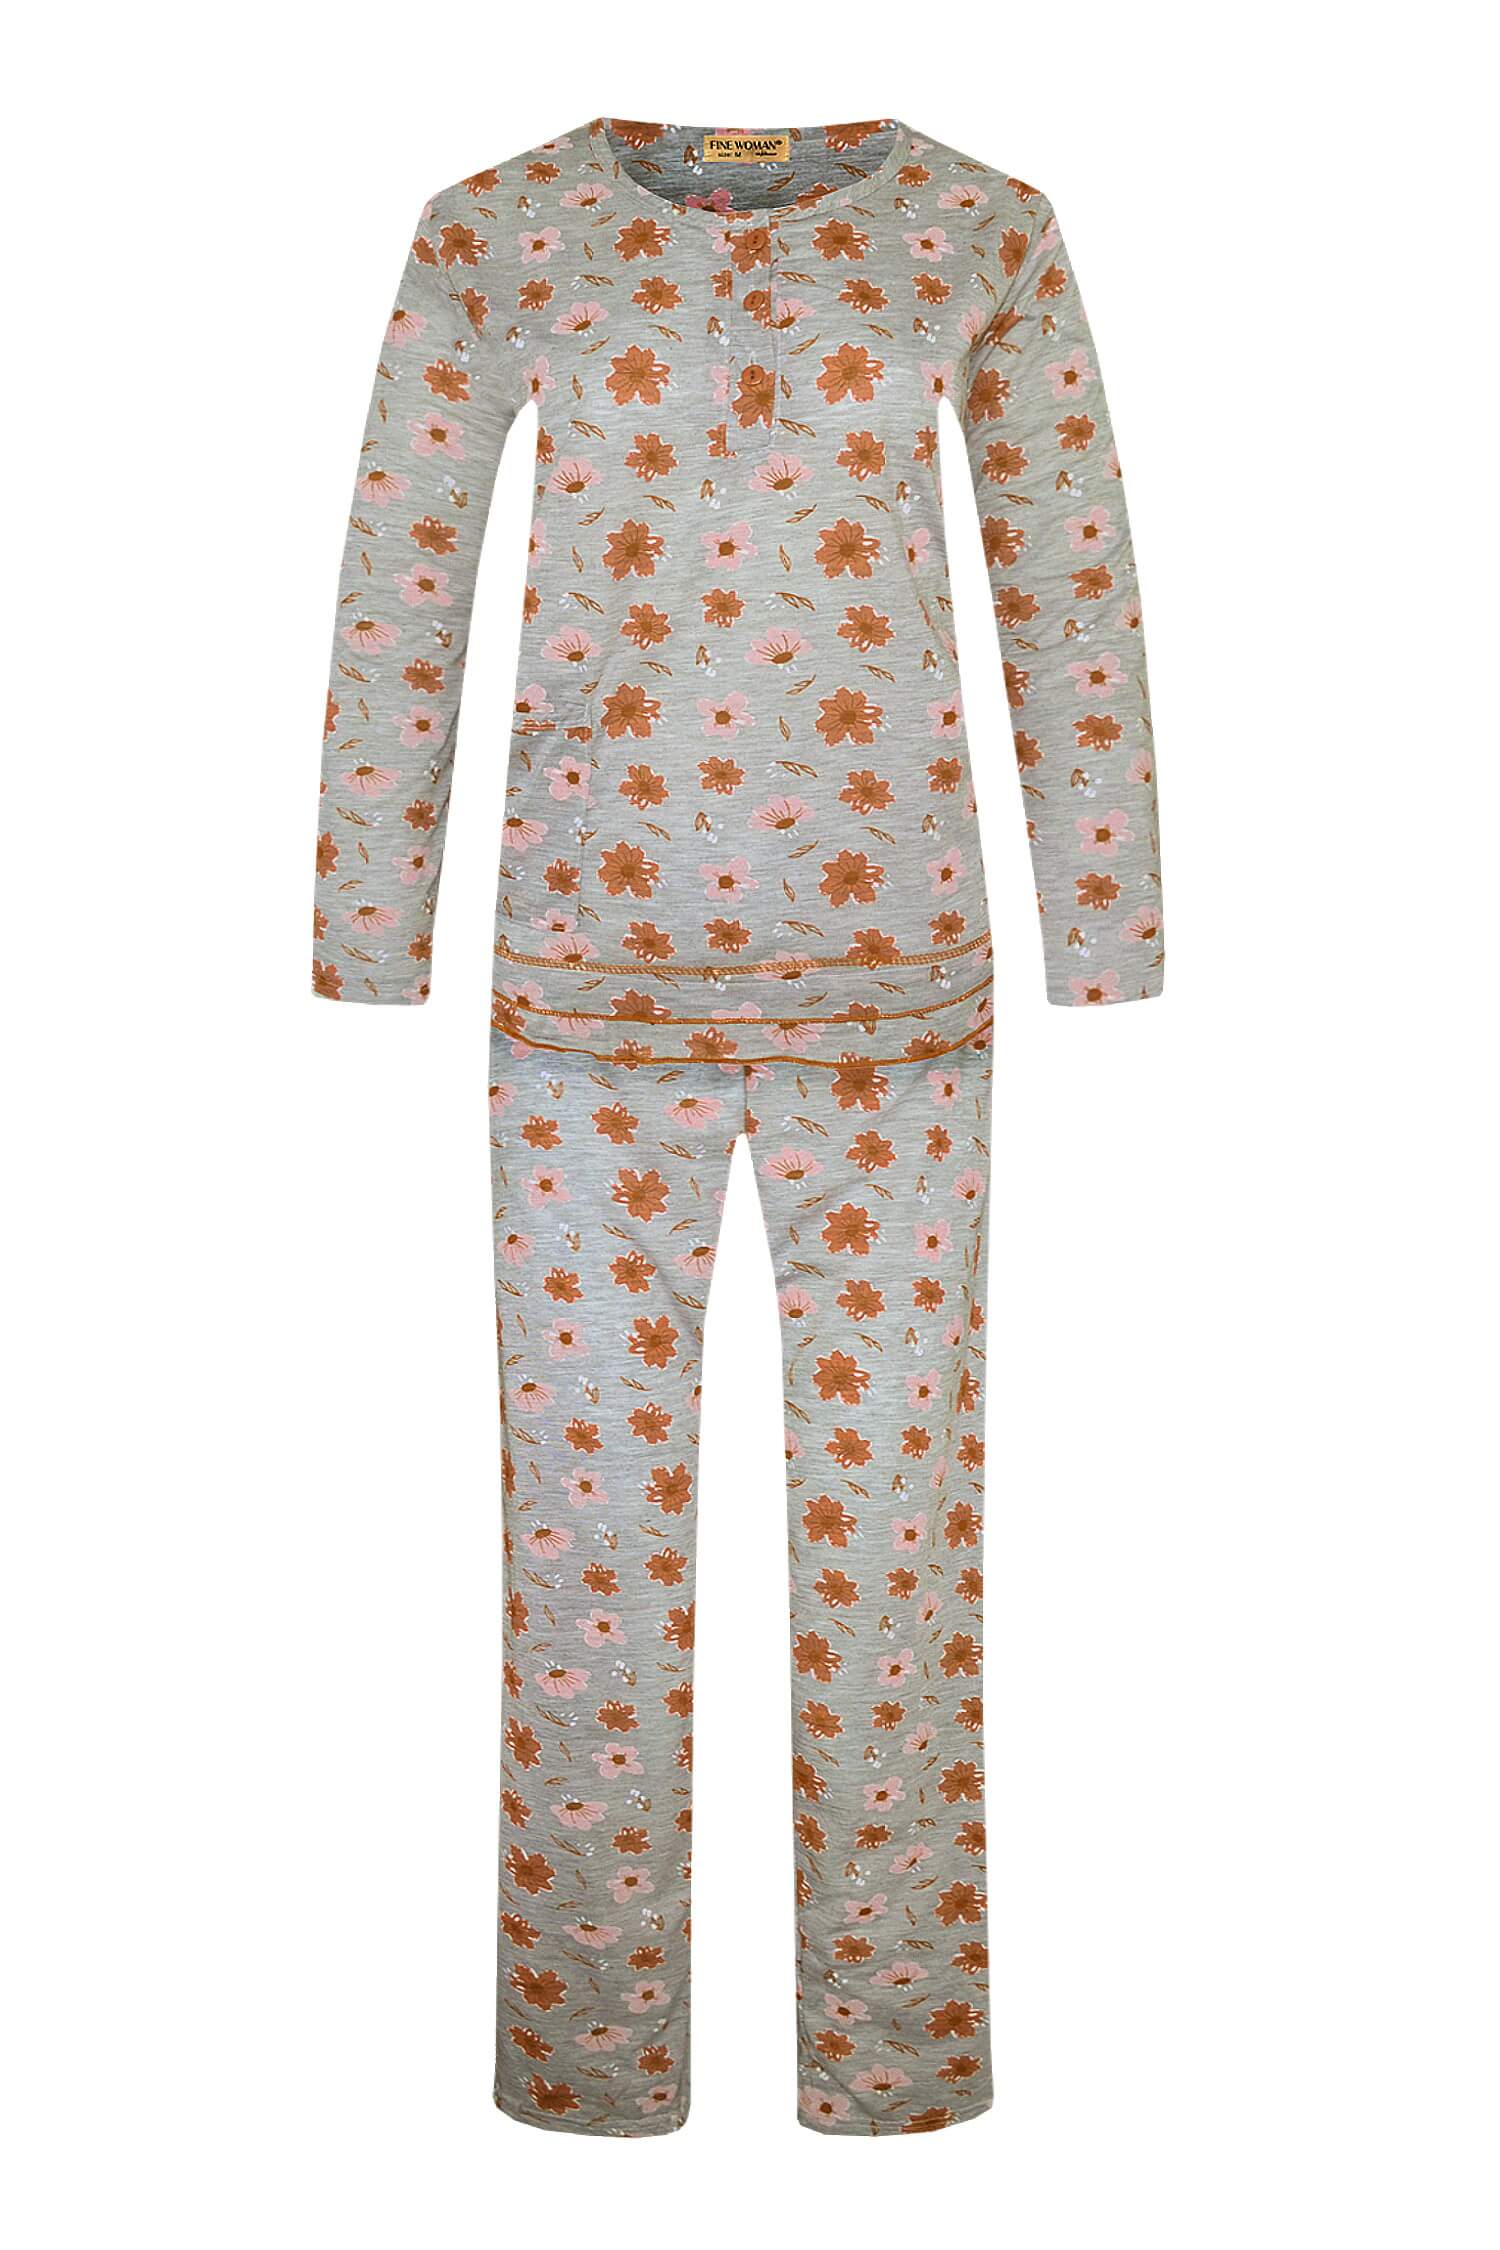 Arenda dámské dlouhé pyžamo 2297 L oranžová